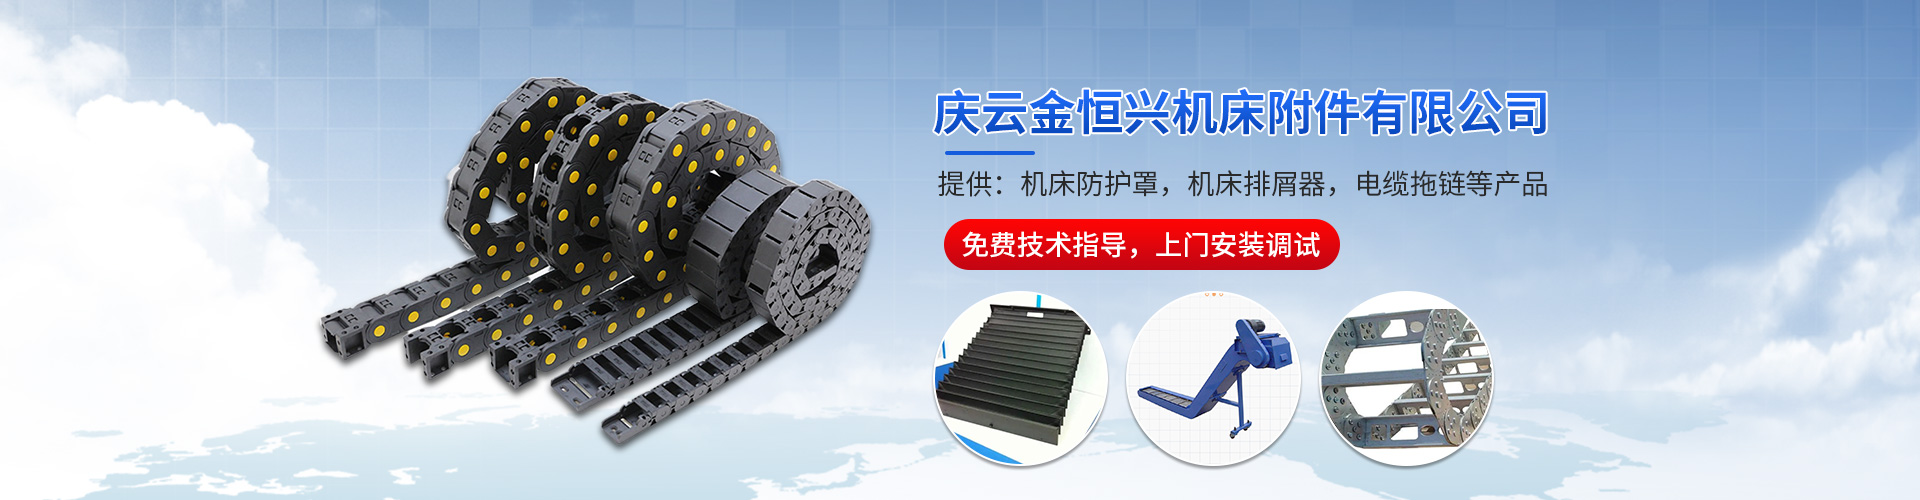 中国台湾力劲TC-500钻攻中心导轨防护罩价位